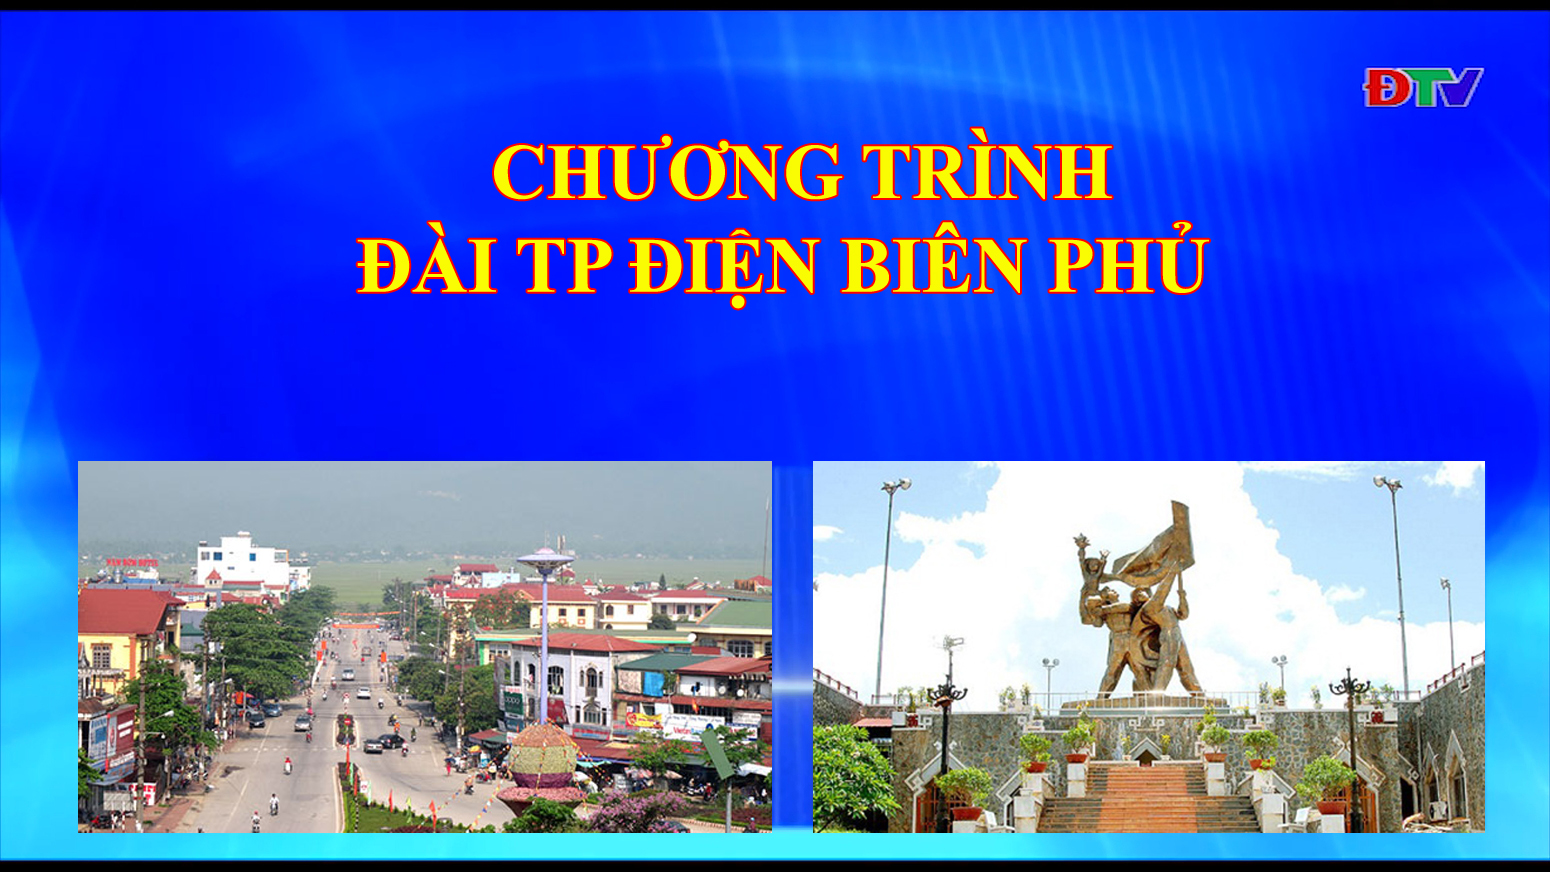 Đài thành phố Điện Biên Phủ (ngày 01-10-2019)